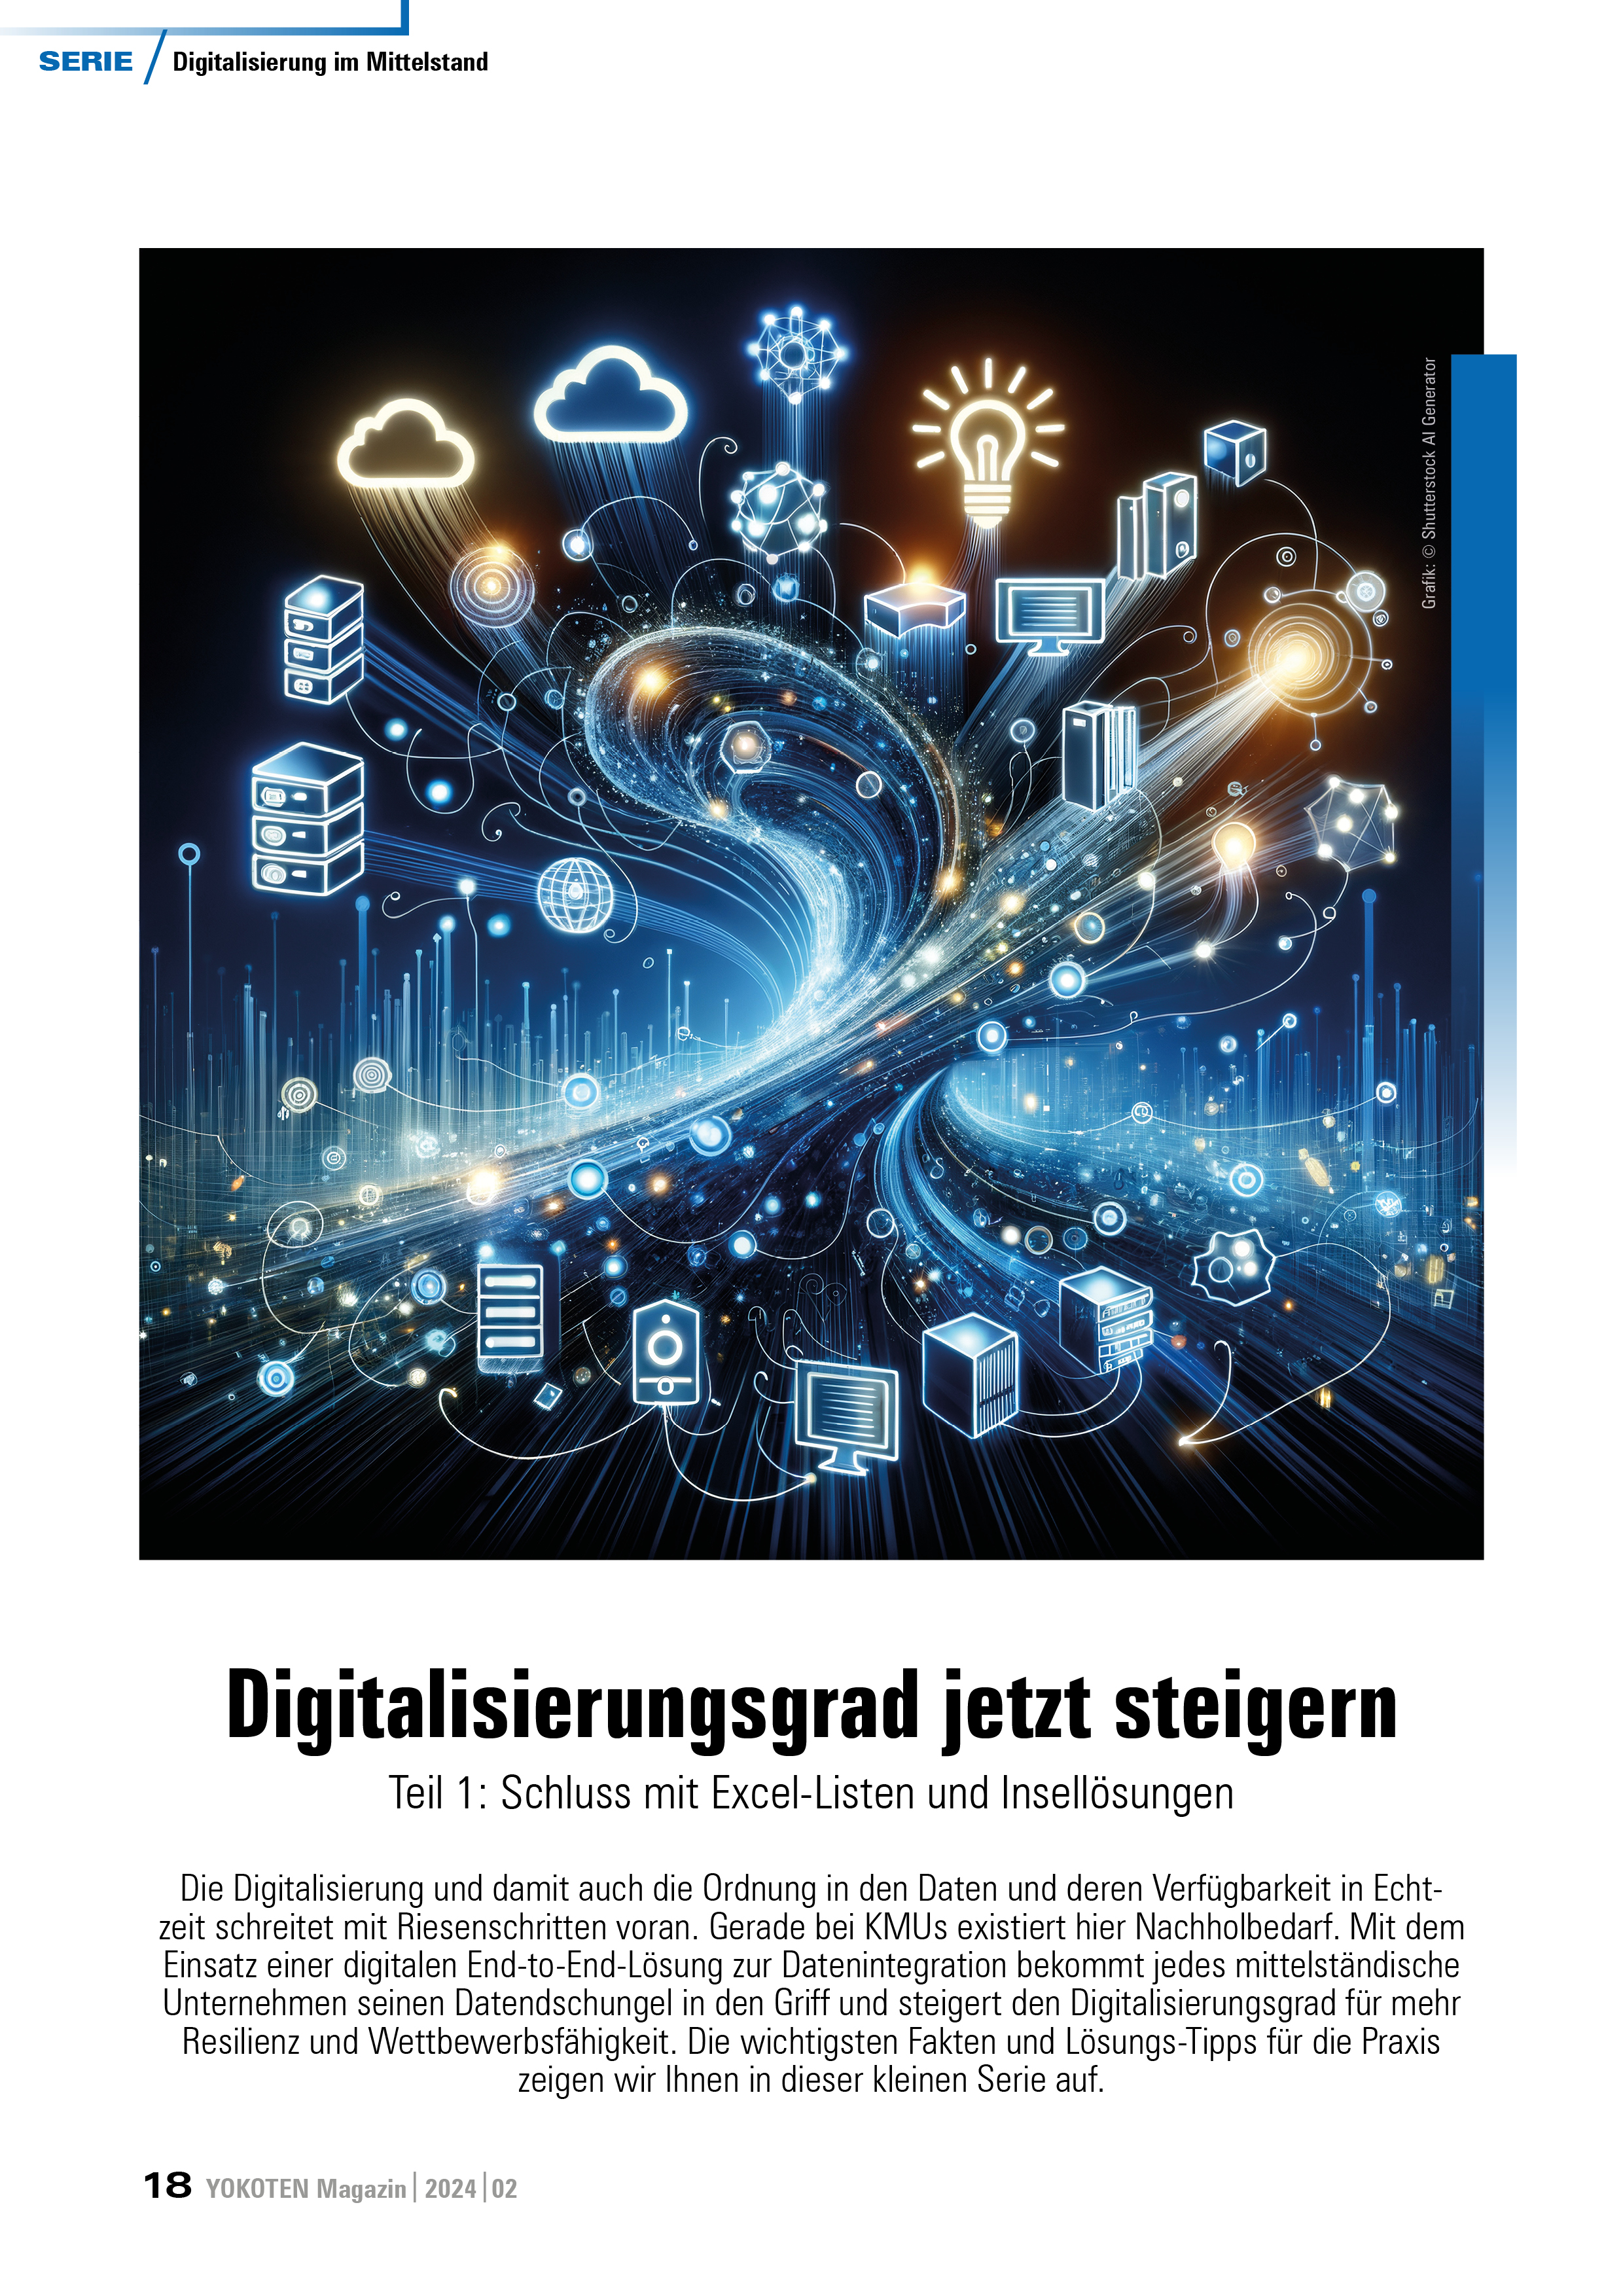 Digitalisierungsgrad jetzt steigern Teil 1 - Artikel aus Fachmagazin YOKOTEN 2024-02